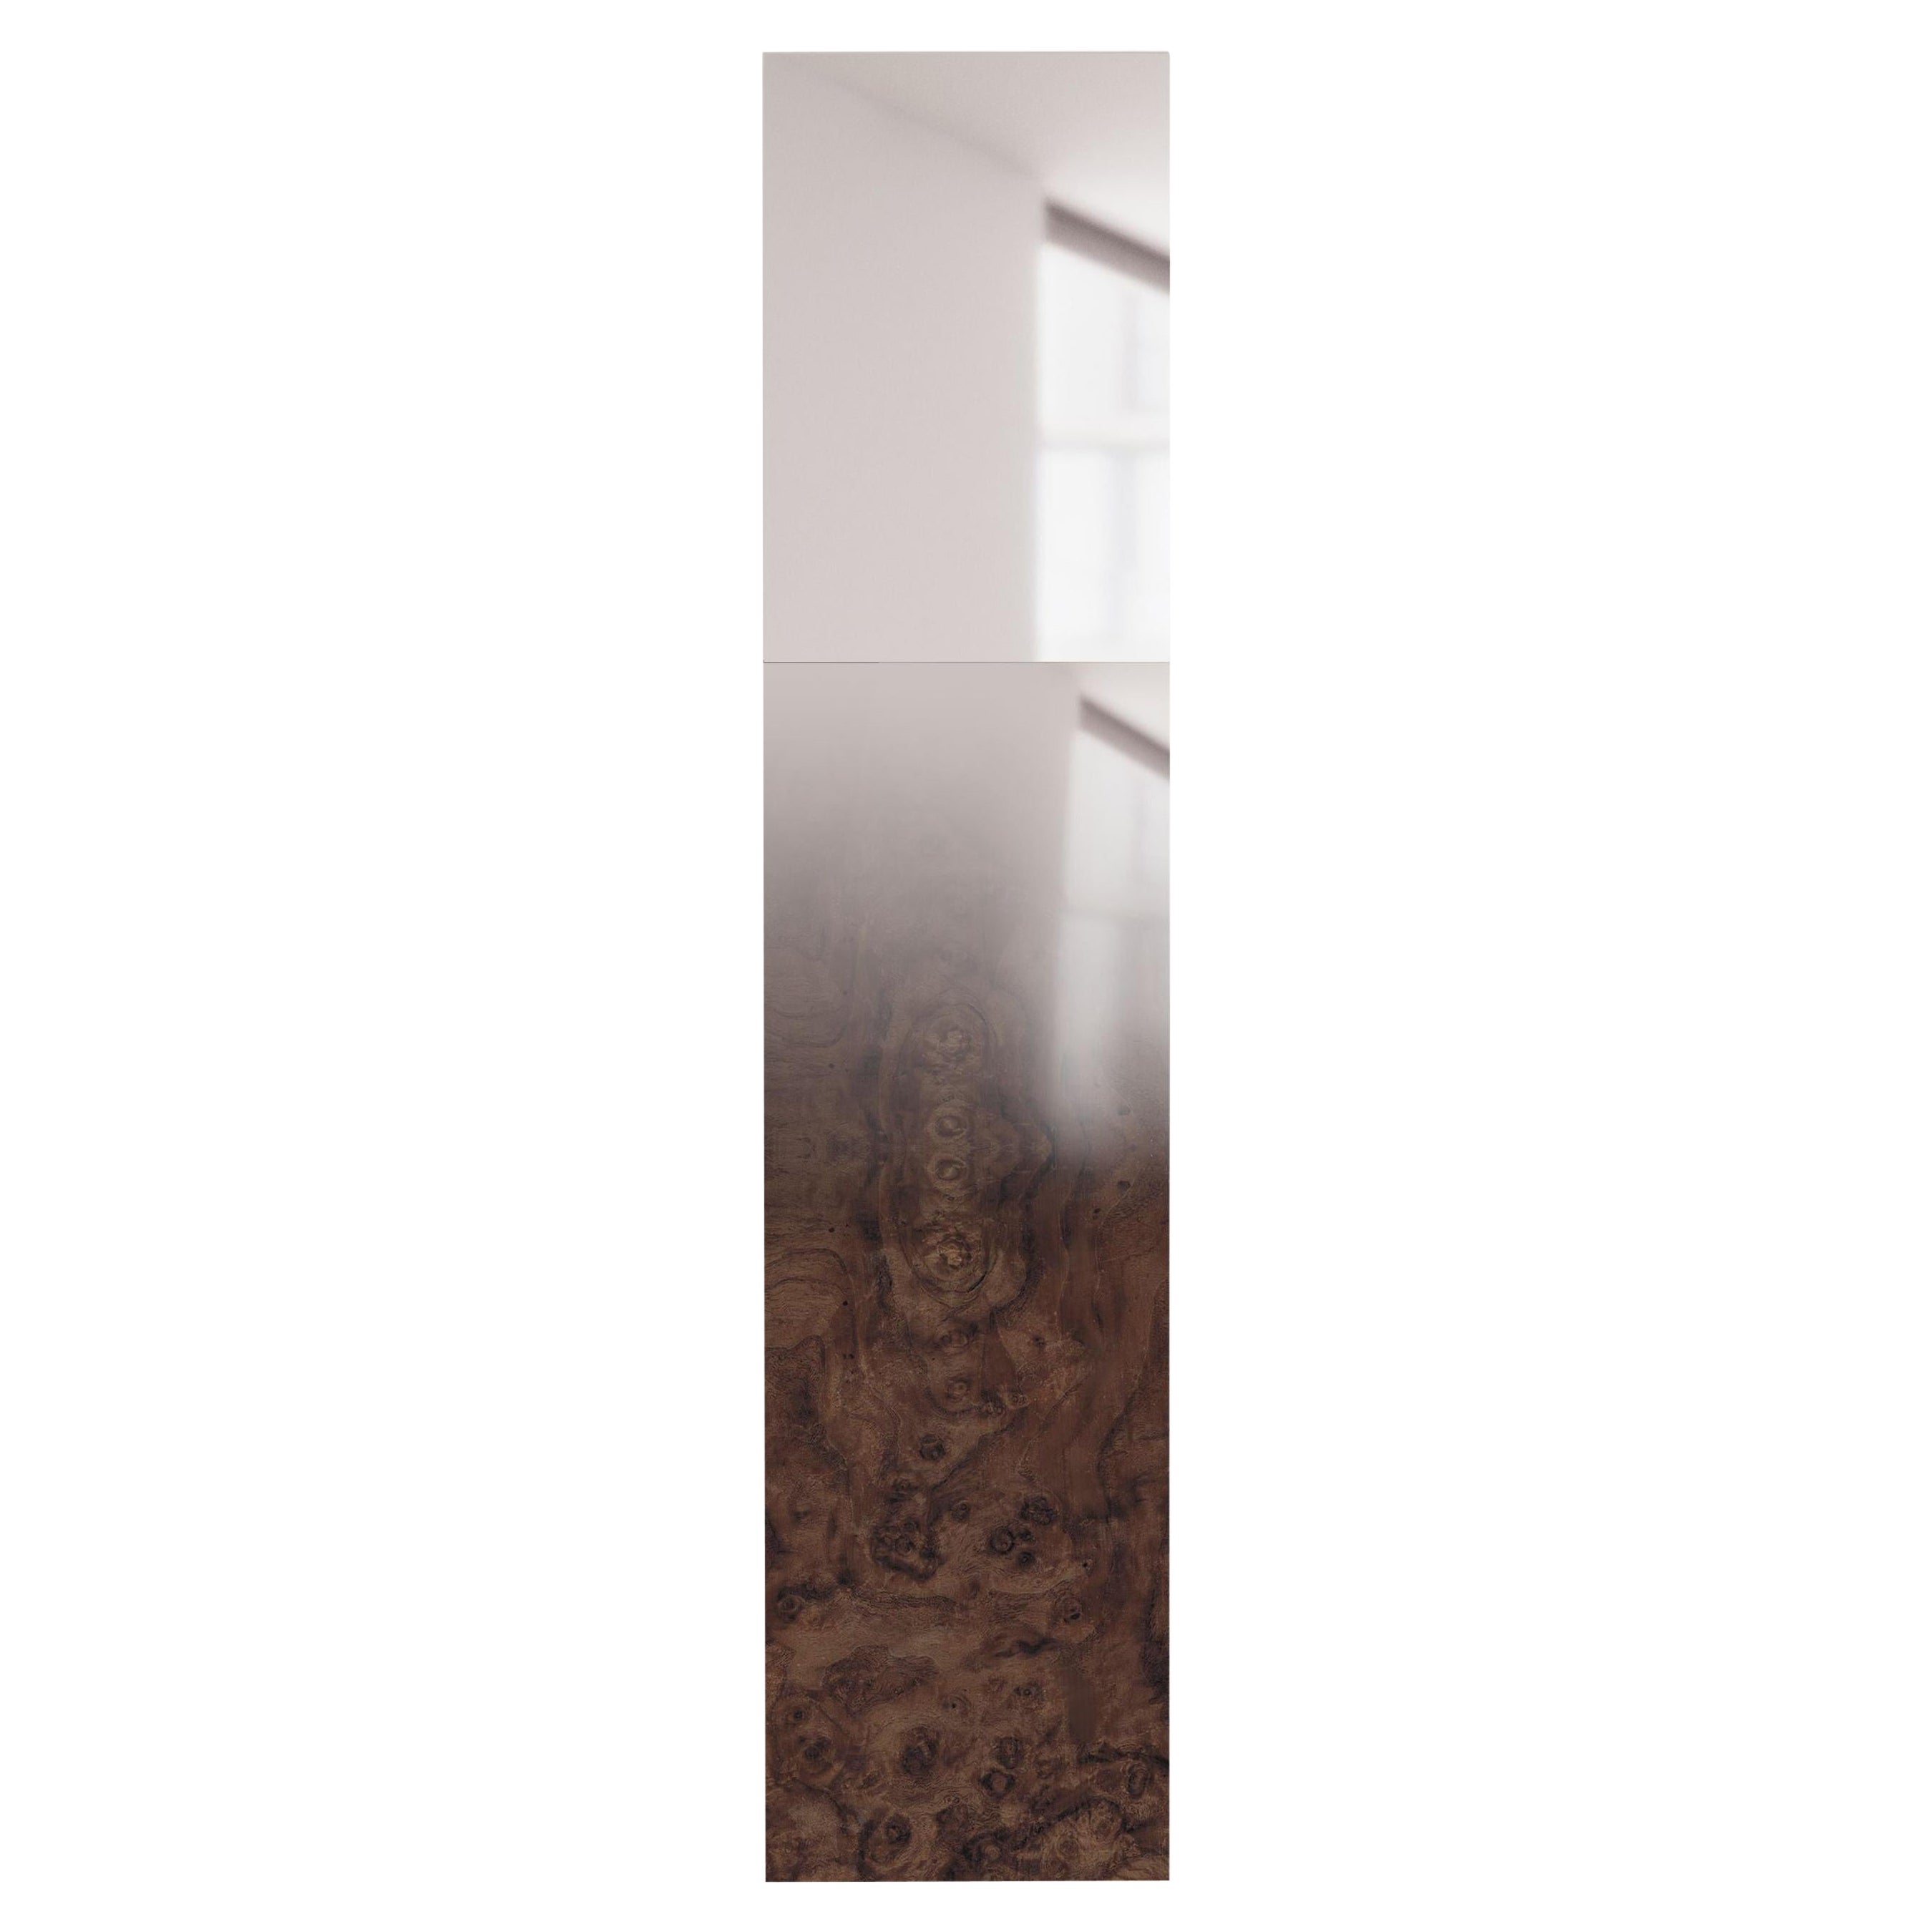 Verblasster Holzspiegel von Formaminima